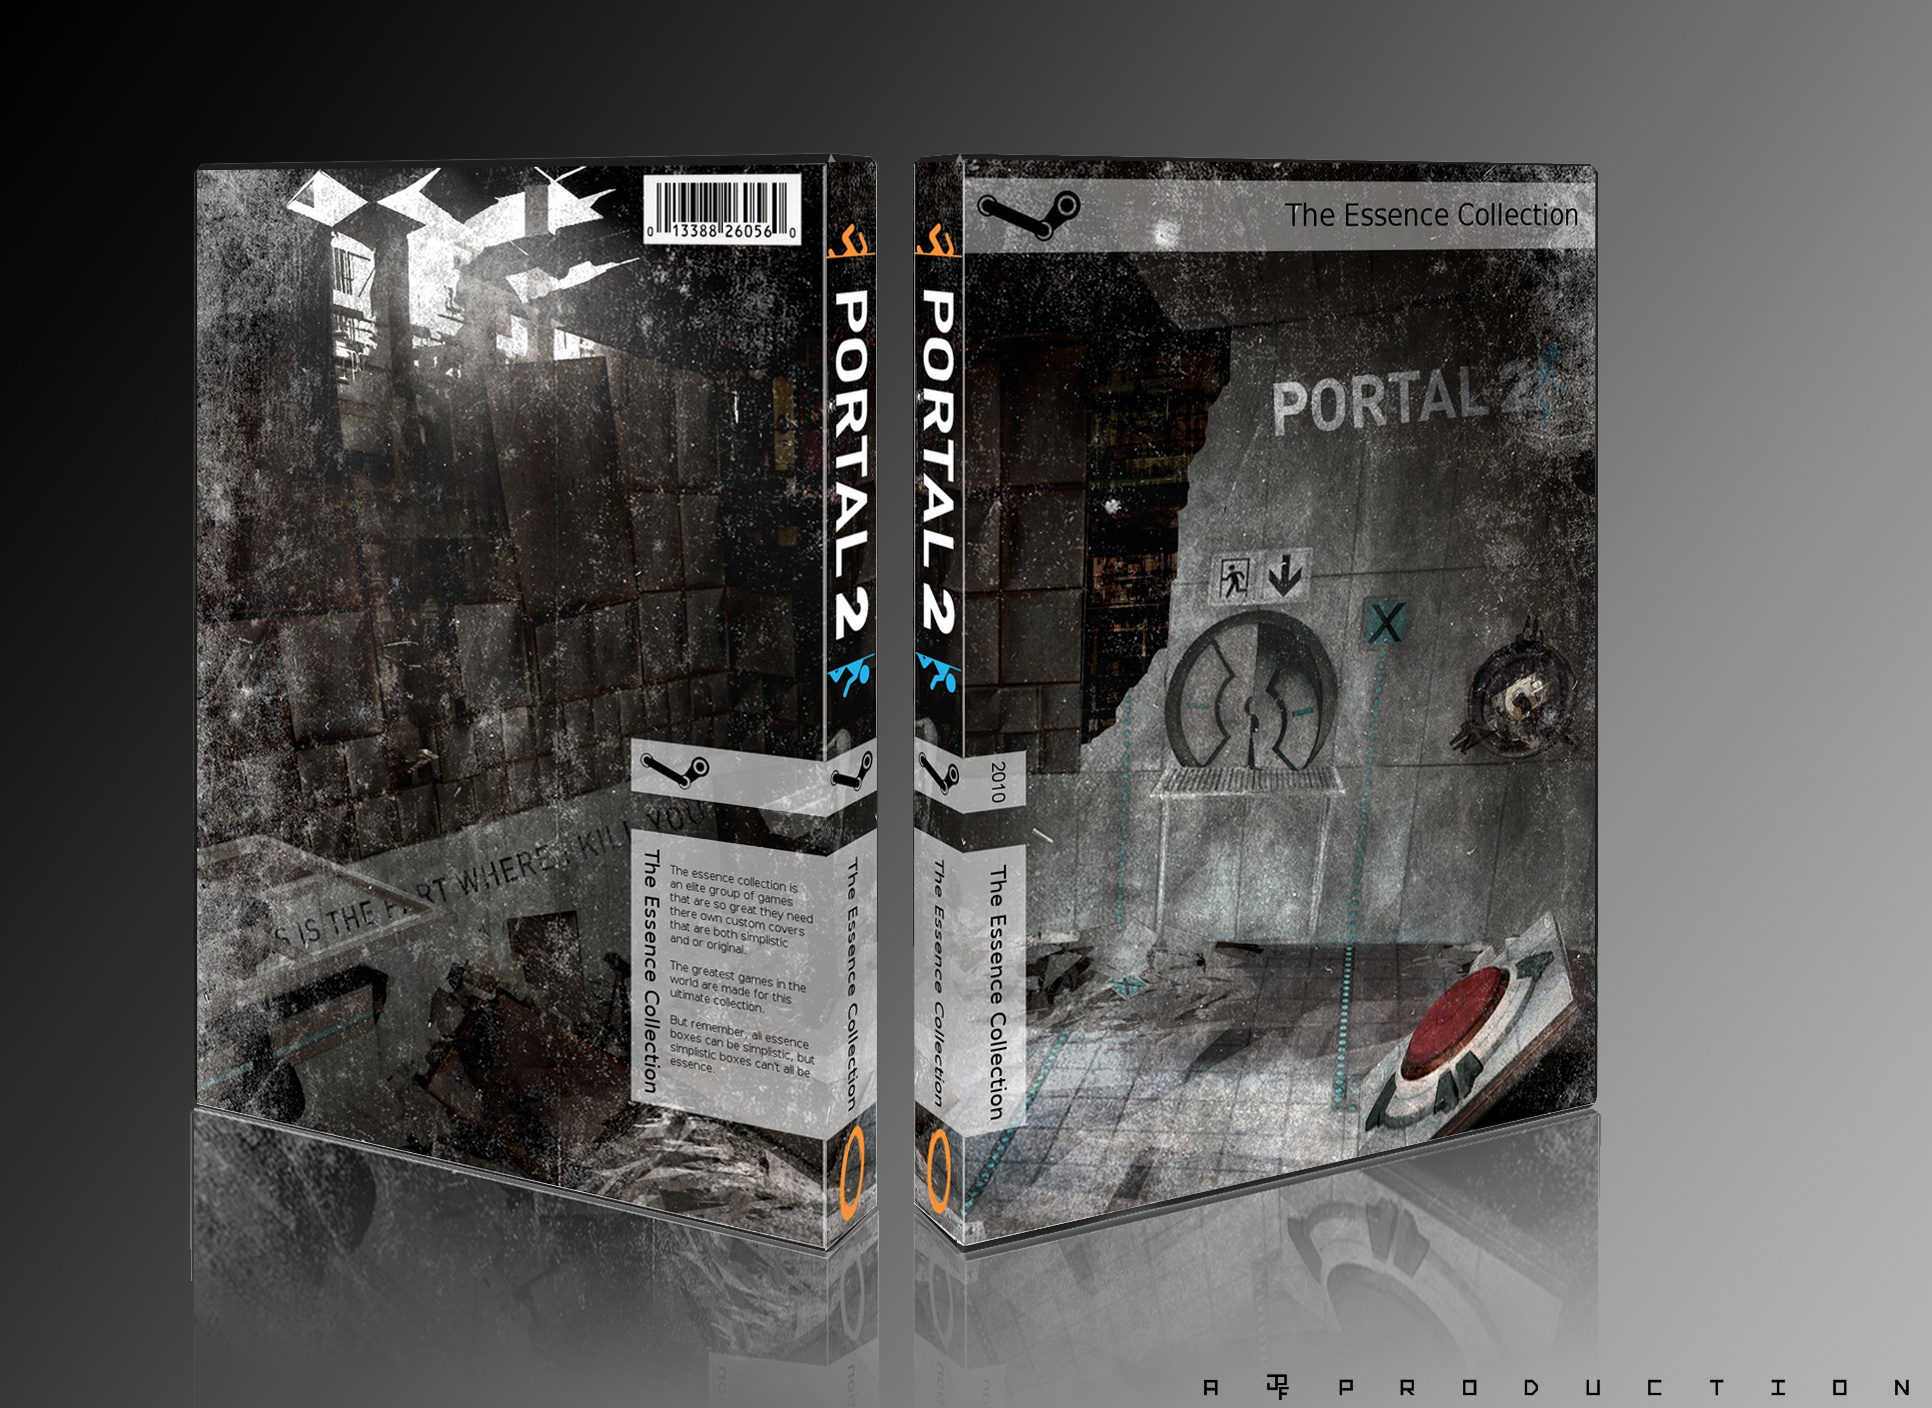 Portal 2 box cover